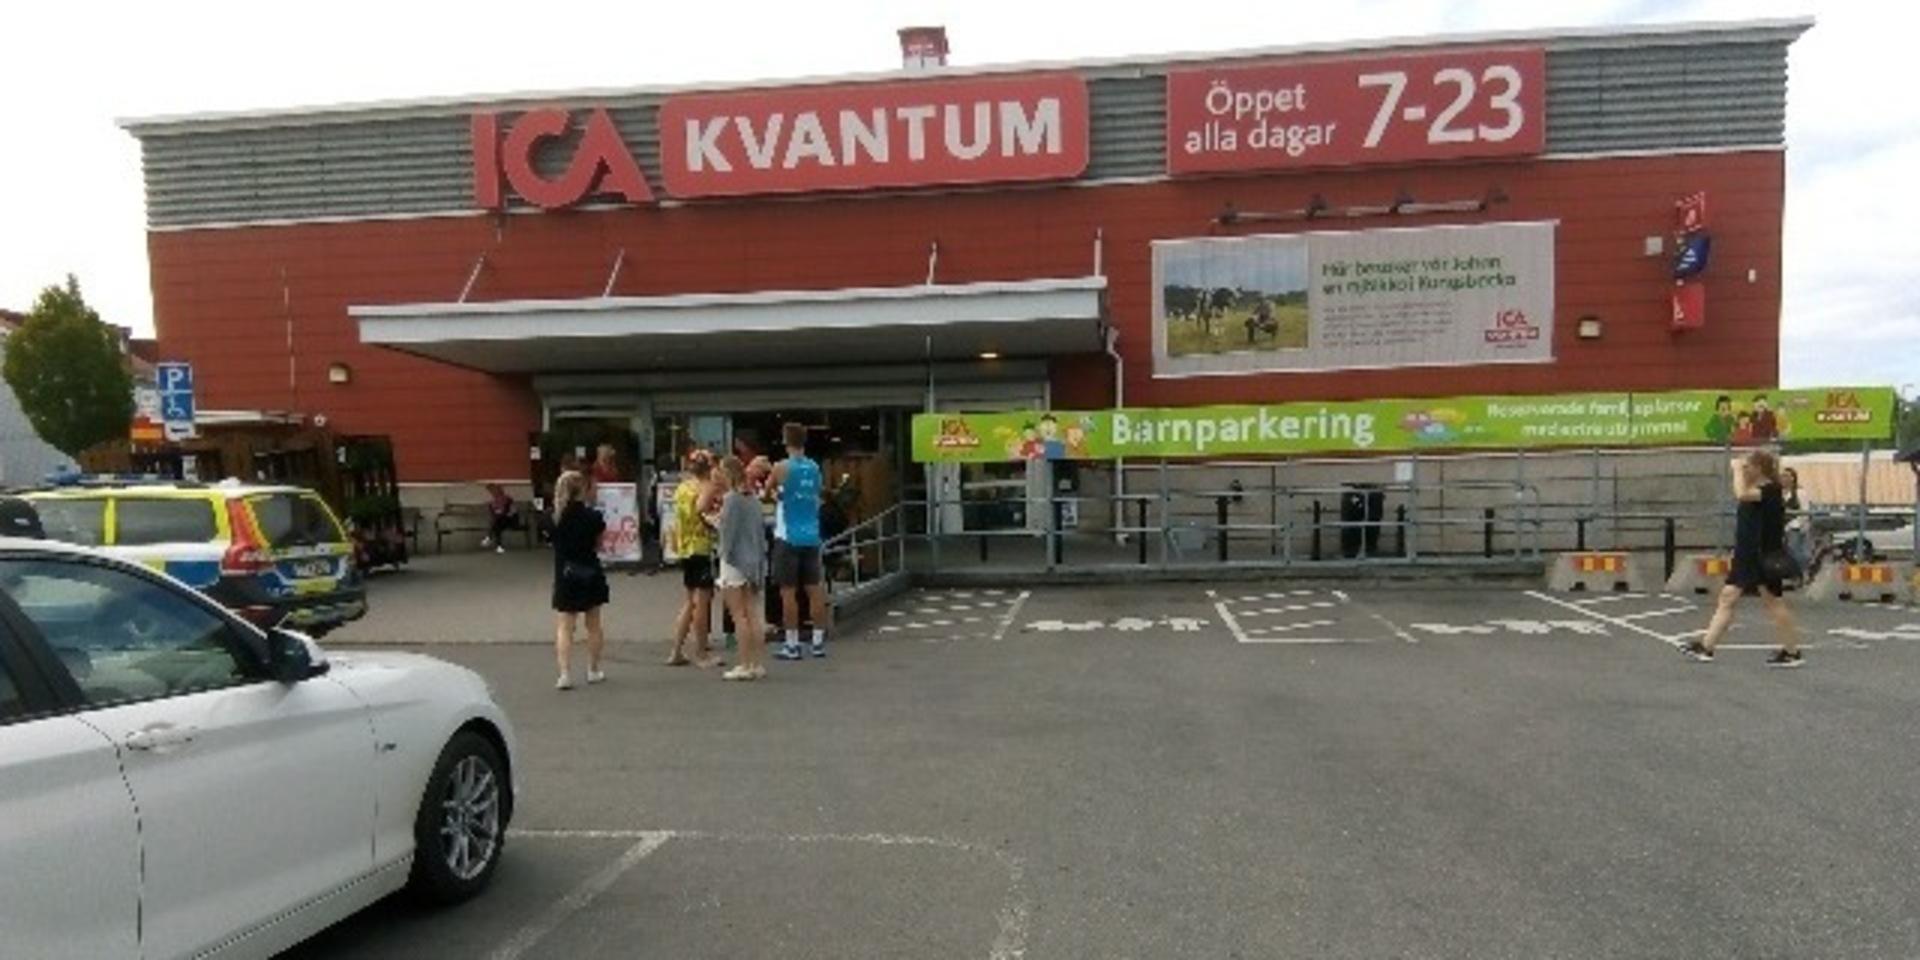 Ica Kvantum i Munkebäck tvingades evakuera butiken.